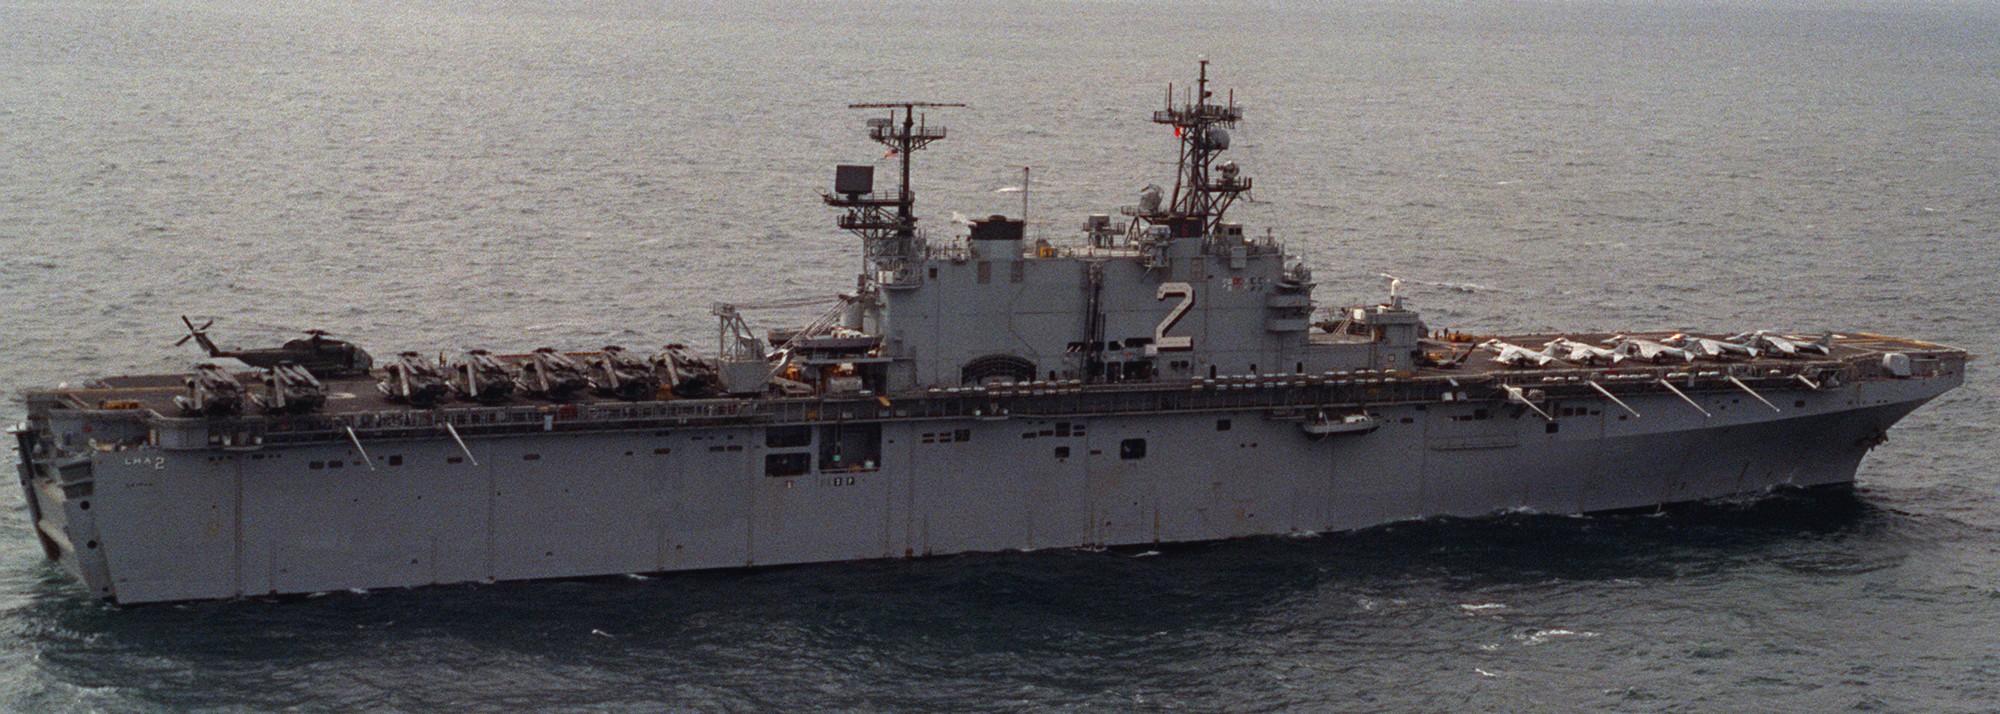 lha-2 uss saipan tarawa class amphibious assault ship us navy 22nd meu hmm-261 rein usmc 93